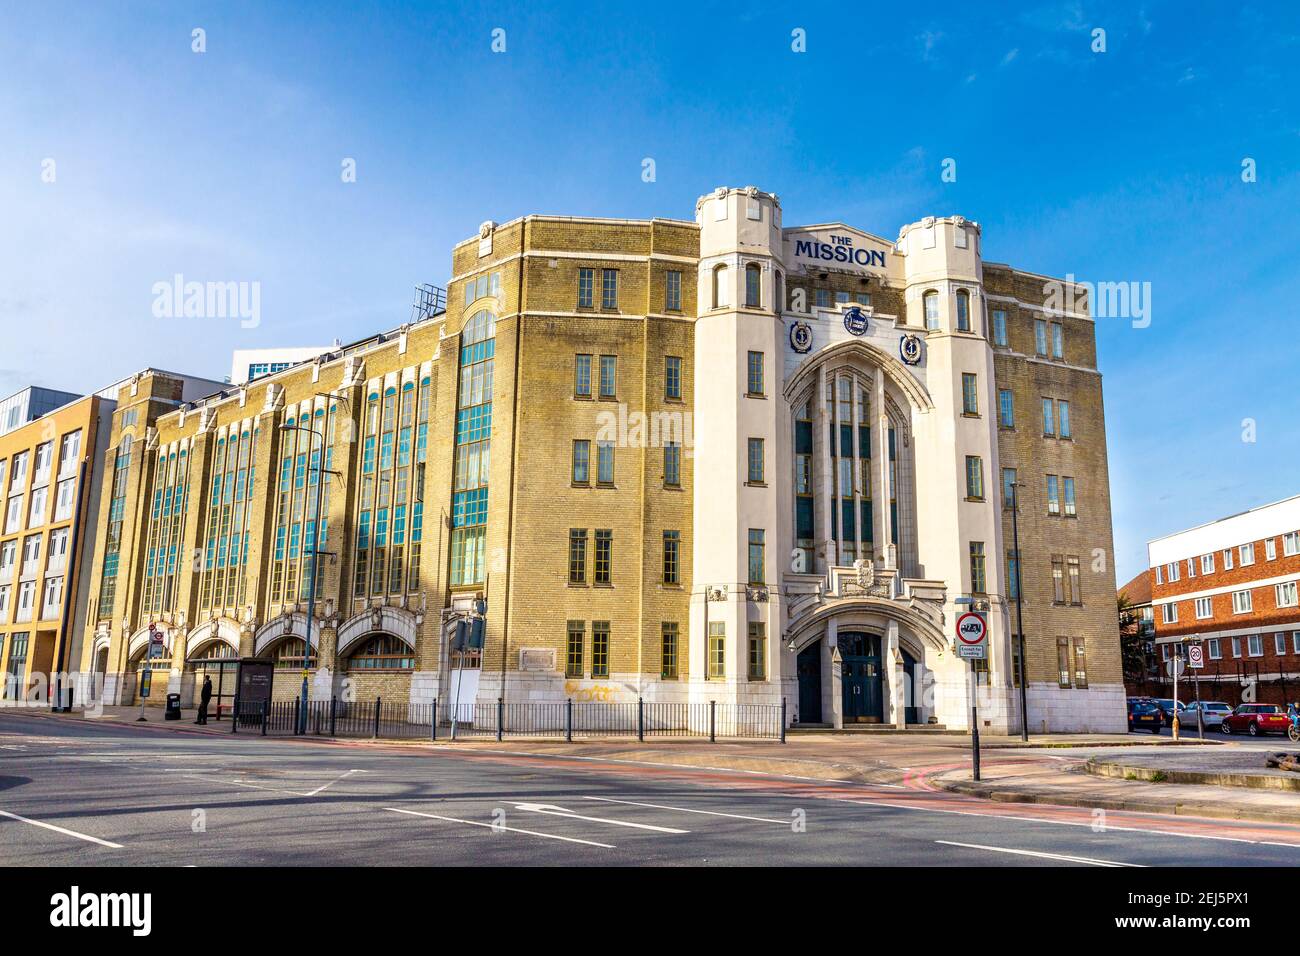 Le bâtiment résidentiel de Mission a été converti de l'Empire Memorial marinss' Hostel des années 1920 à Limehouse, Londres, Royaume-Uni Banque D'Images